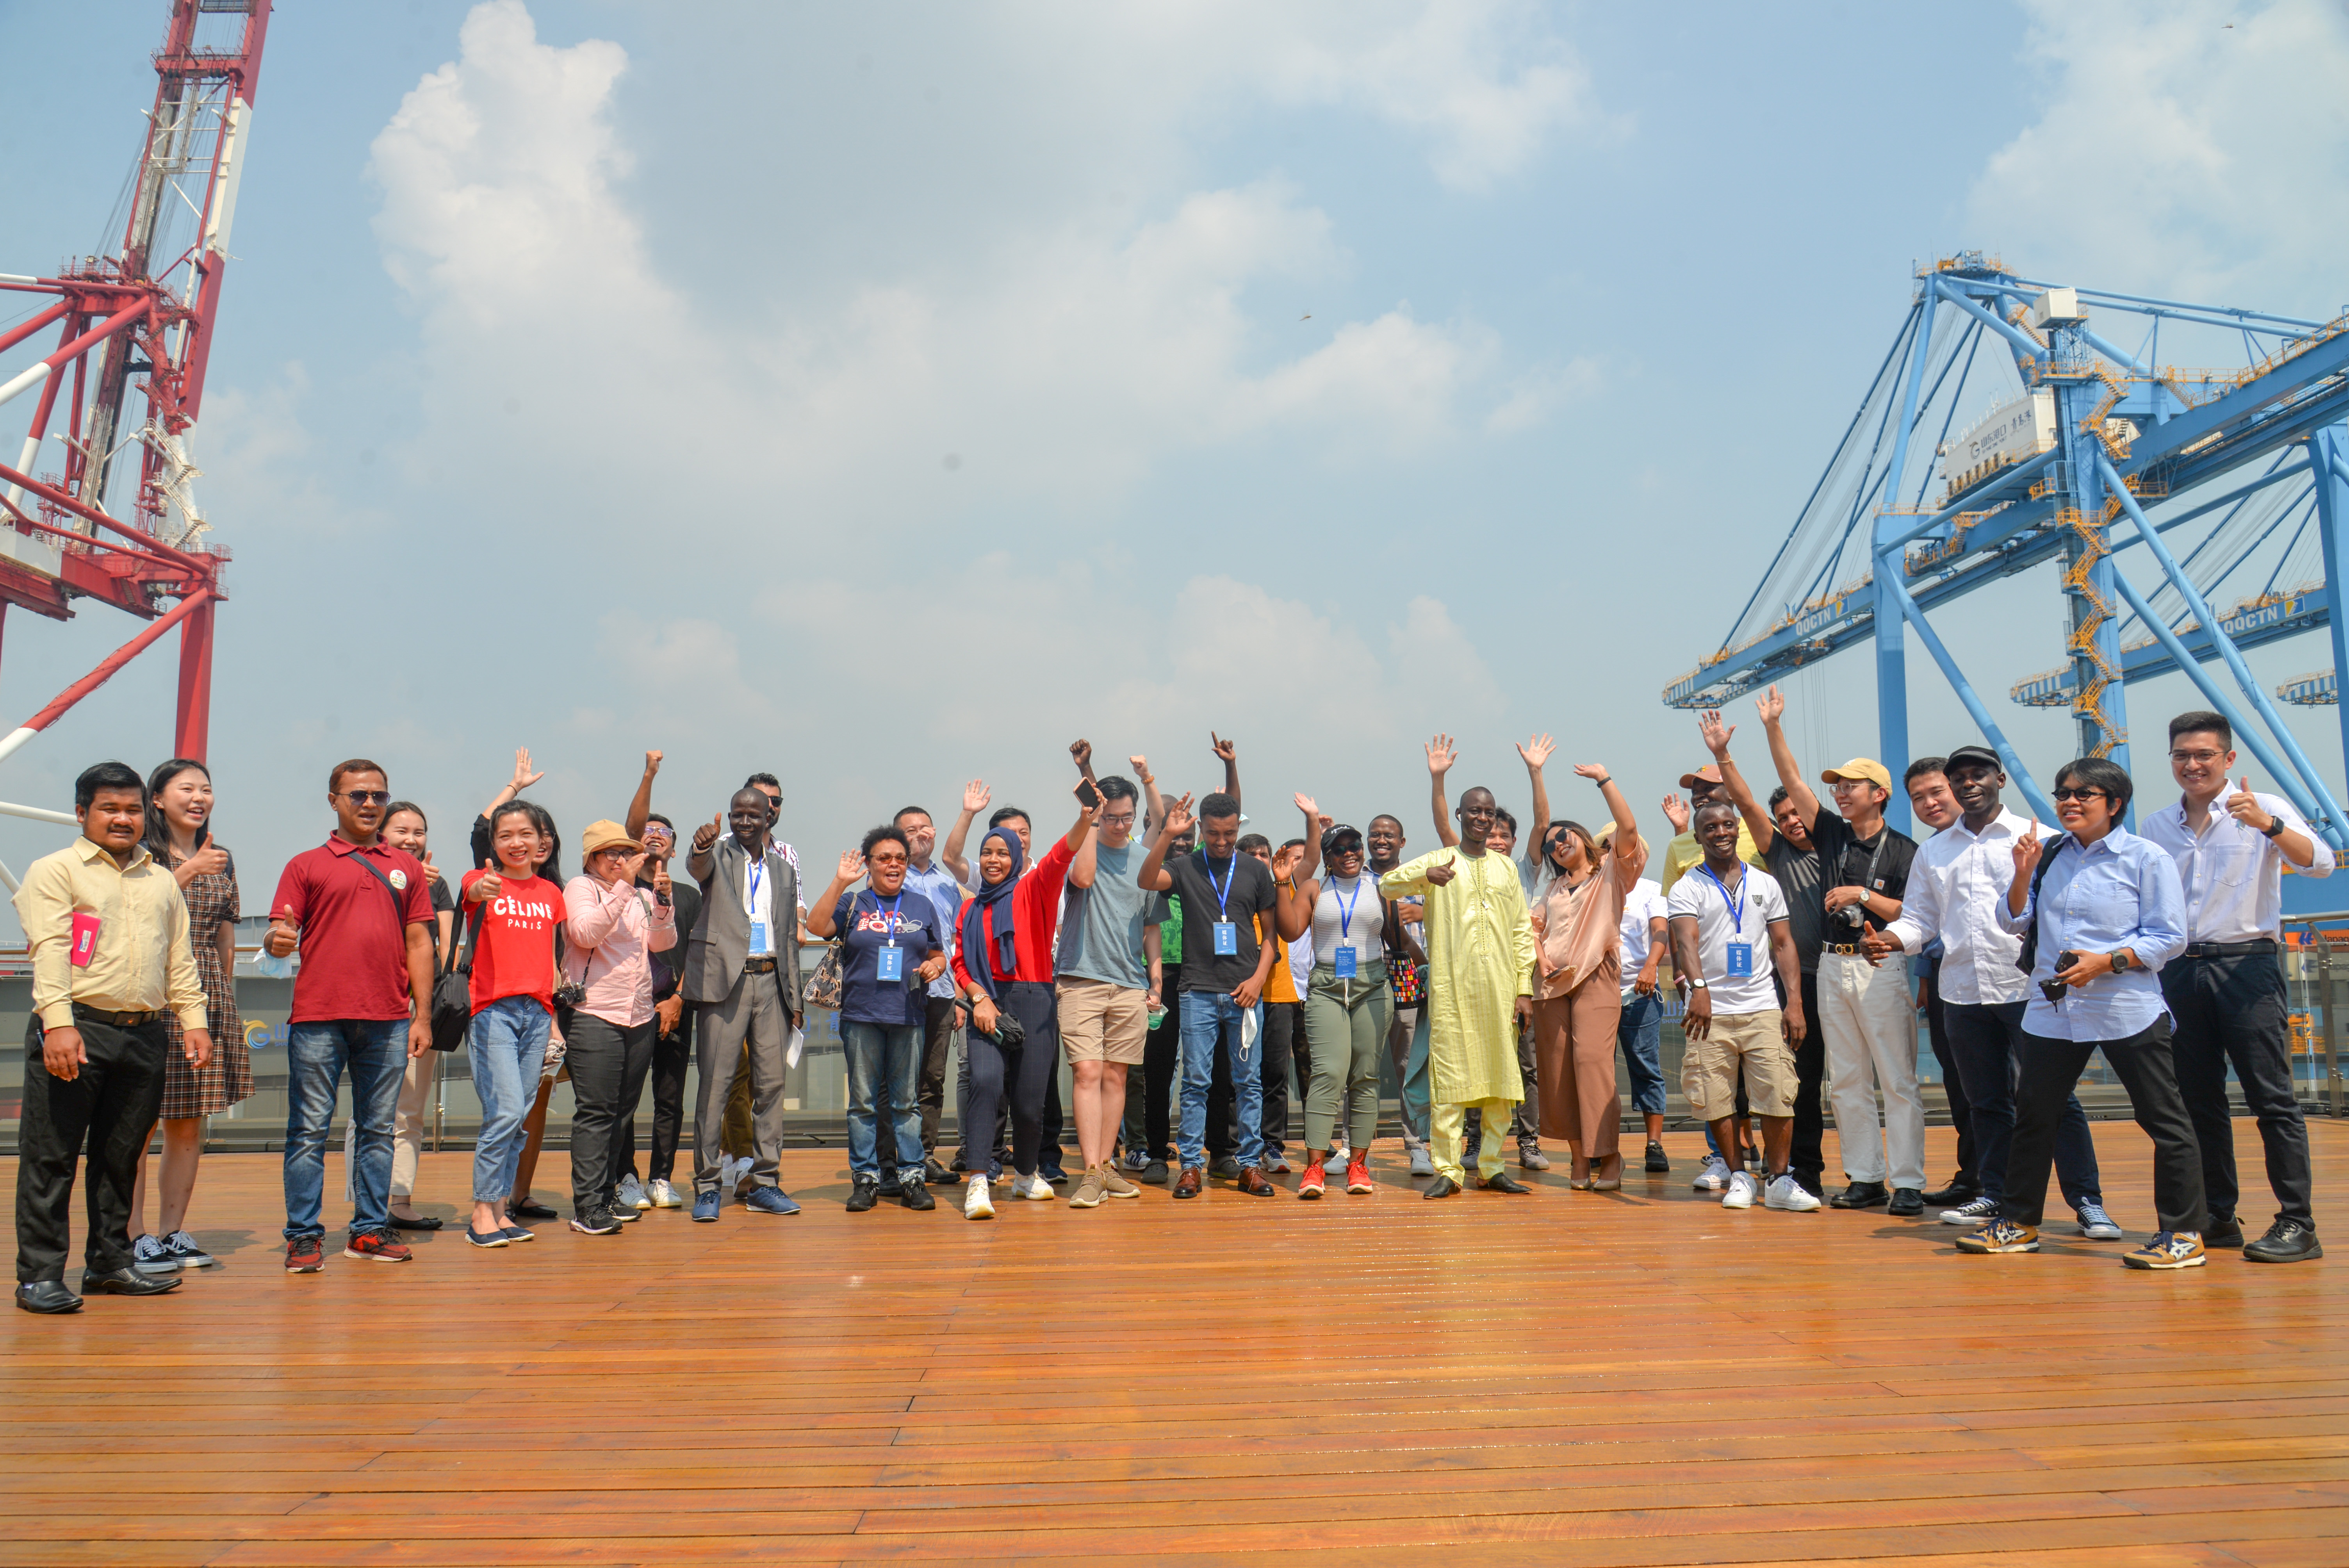 扩大外宣朋友圈！亚太非洲记者团来鲁访问烟威青三市